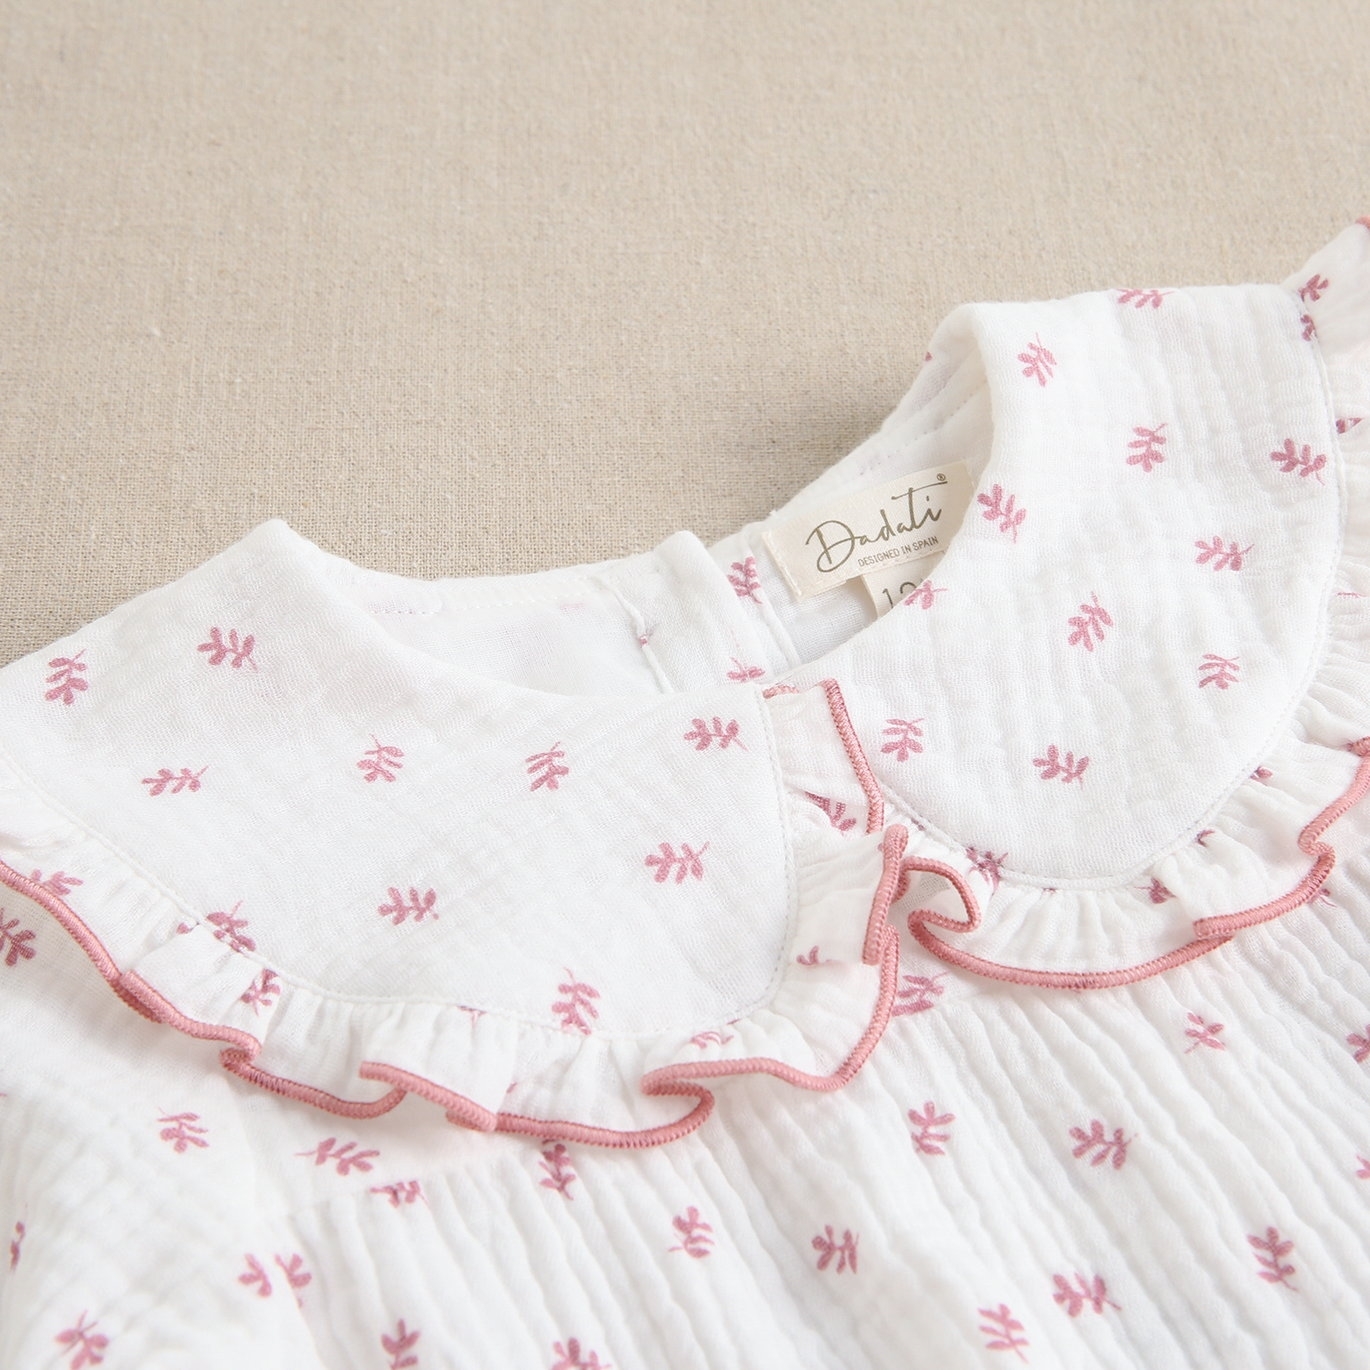 Imagen de Ranita de bebé niña con cuello peter pan con tejido muselina blanca de ramitas rosas